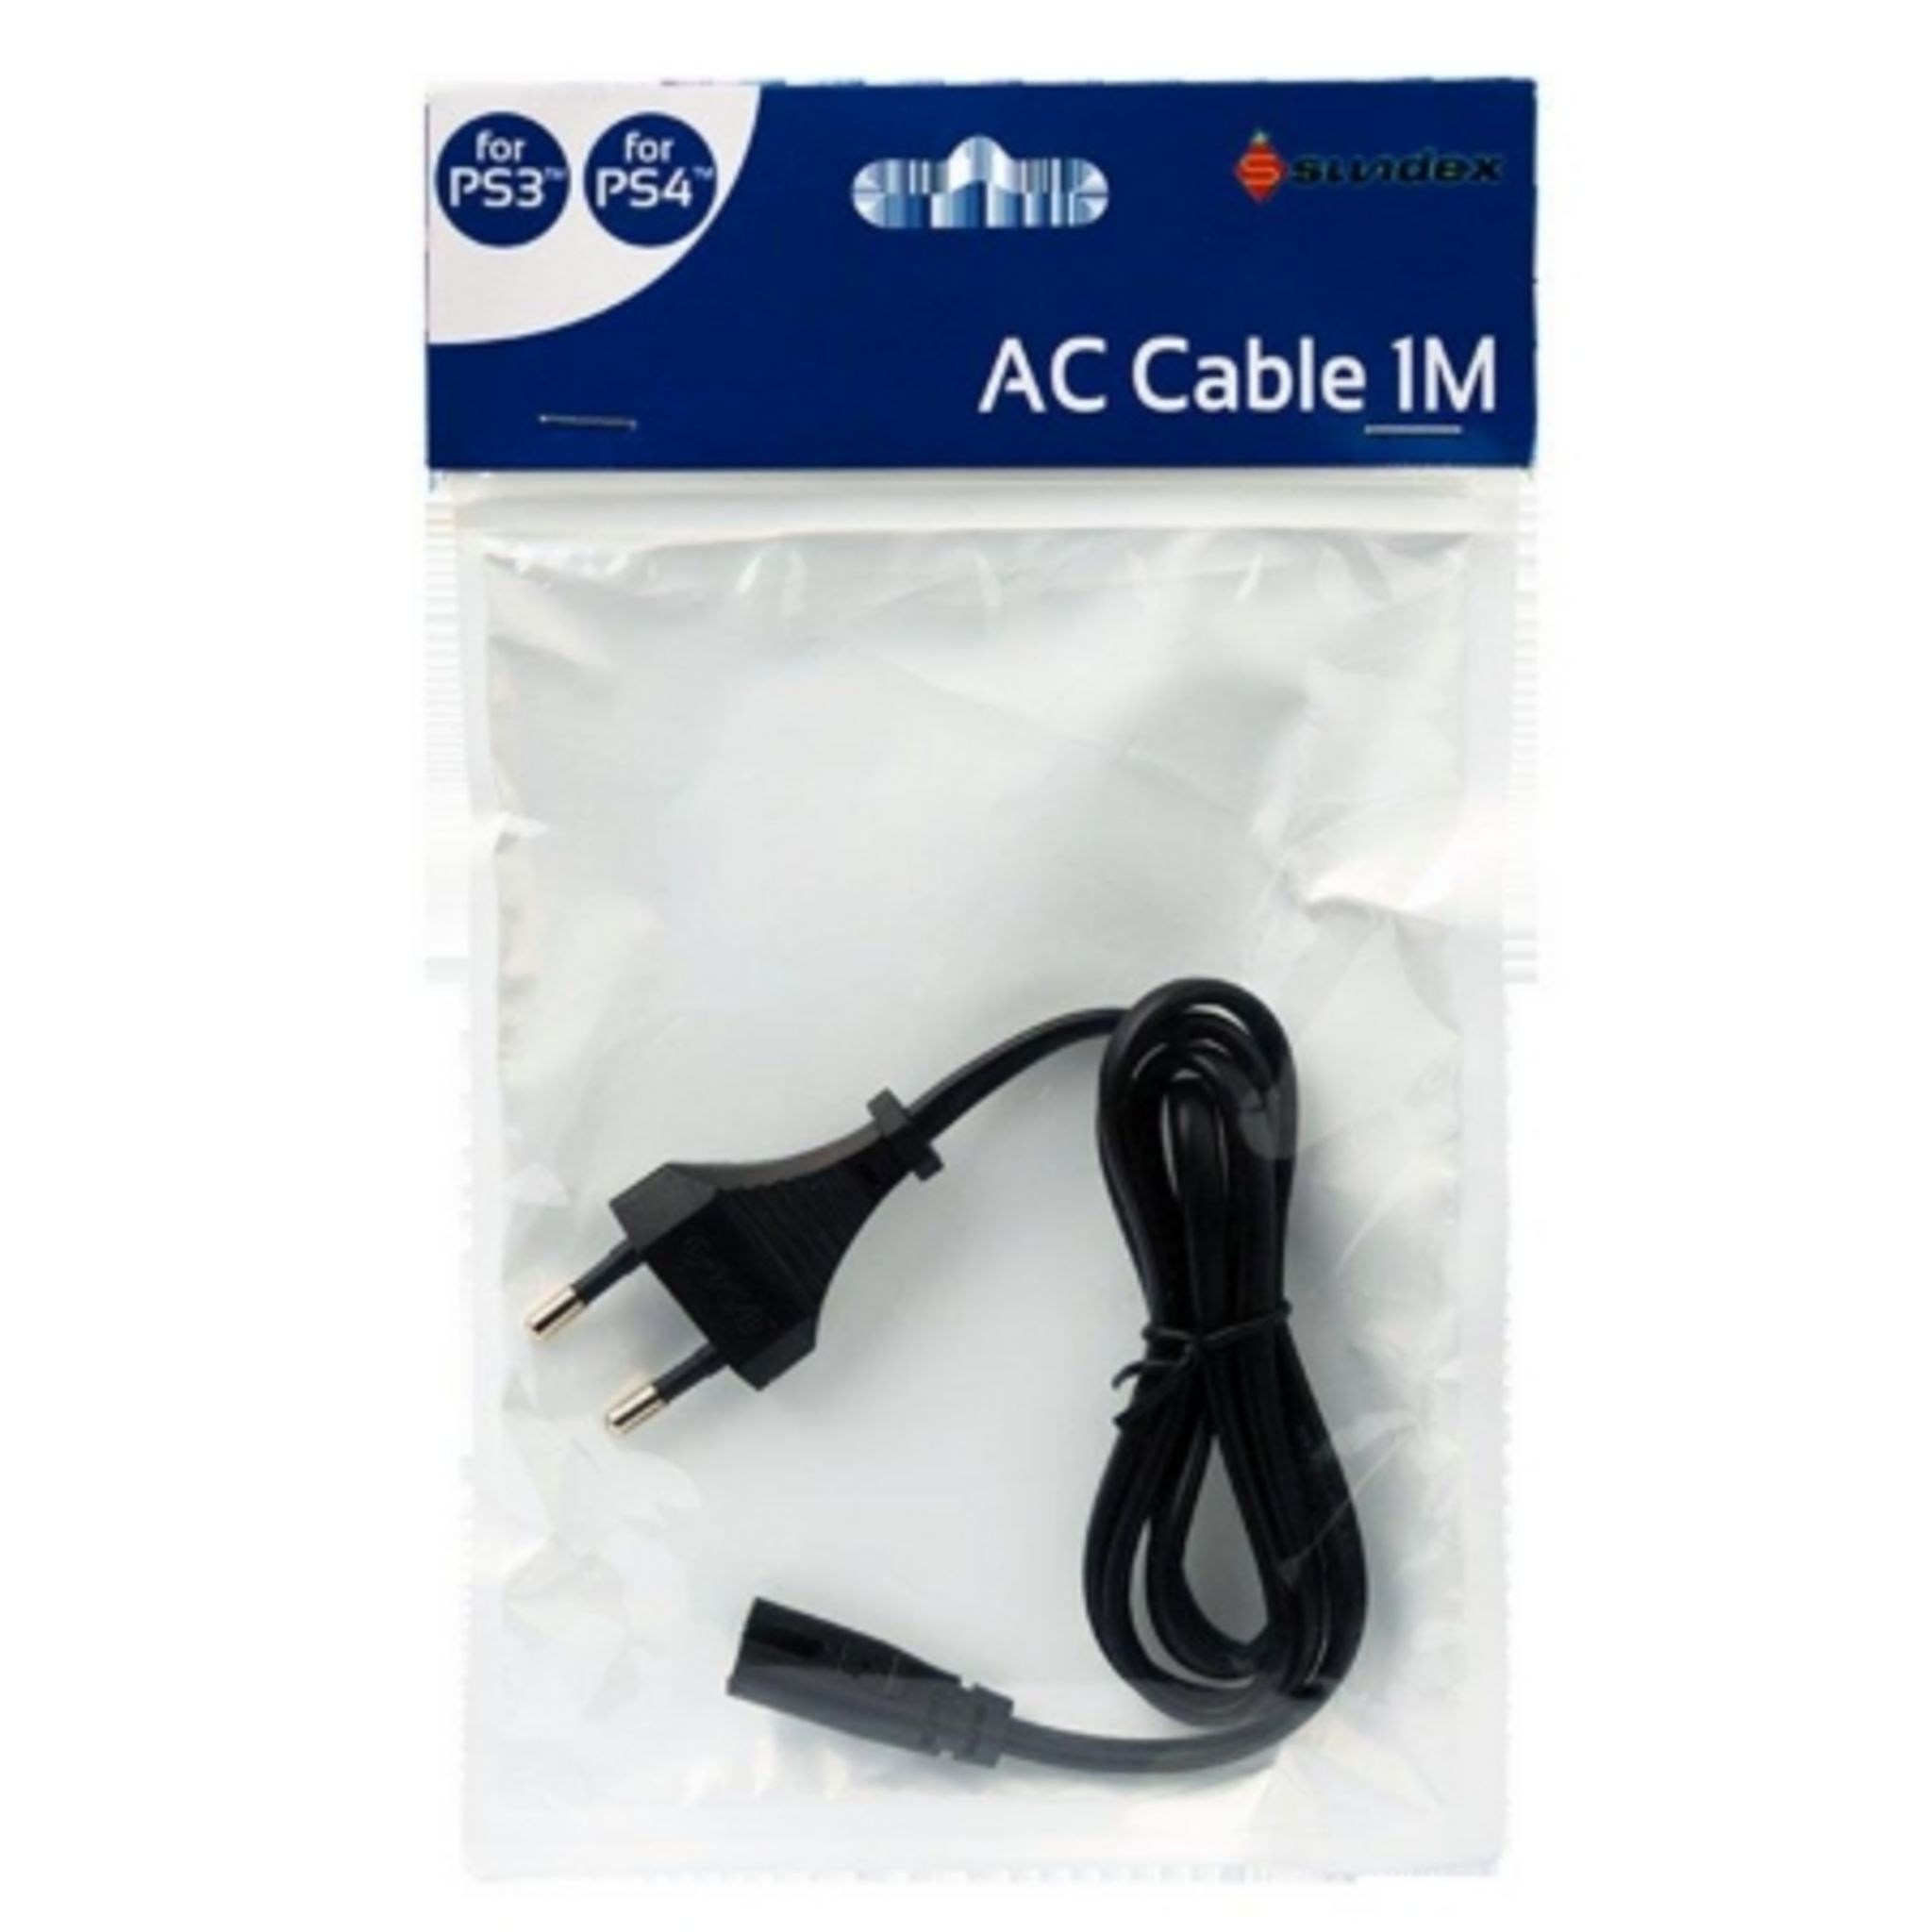 Cable d'alimentation (1m) pour PS3 et PS4 pas cher 